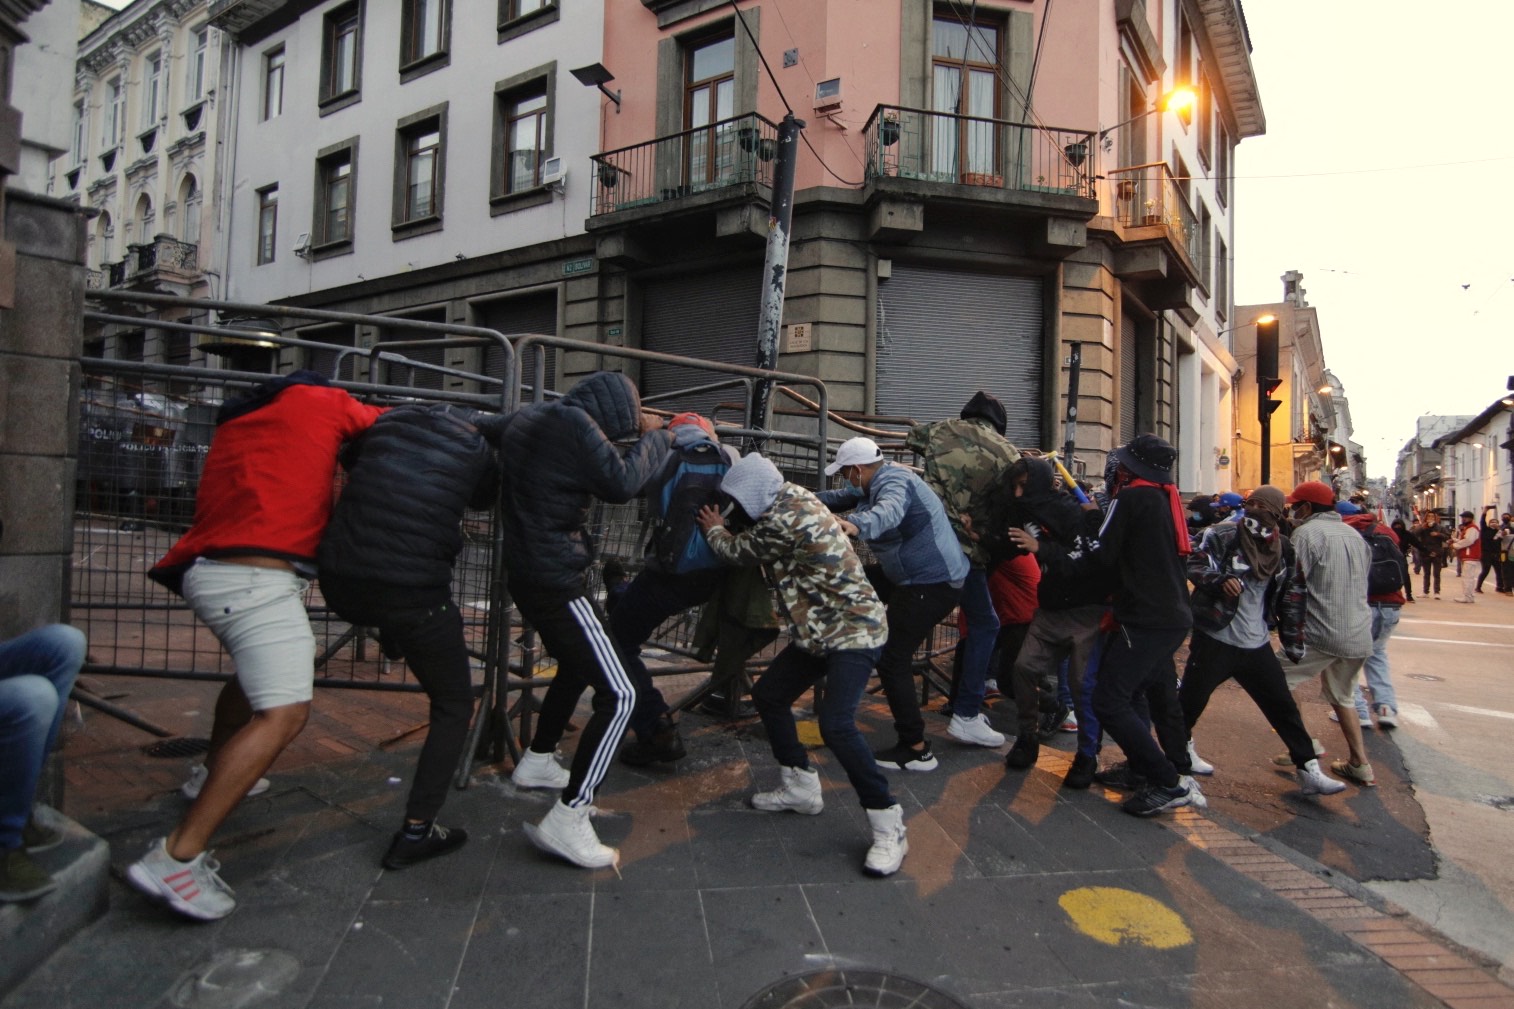 Choques entre indígenas y policías en Quito; gobierno alerta sobre amenazas a la democracia